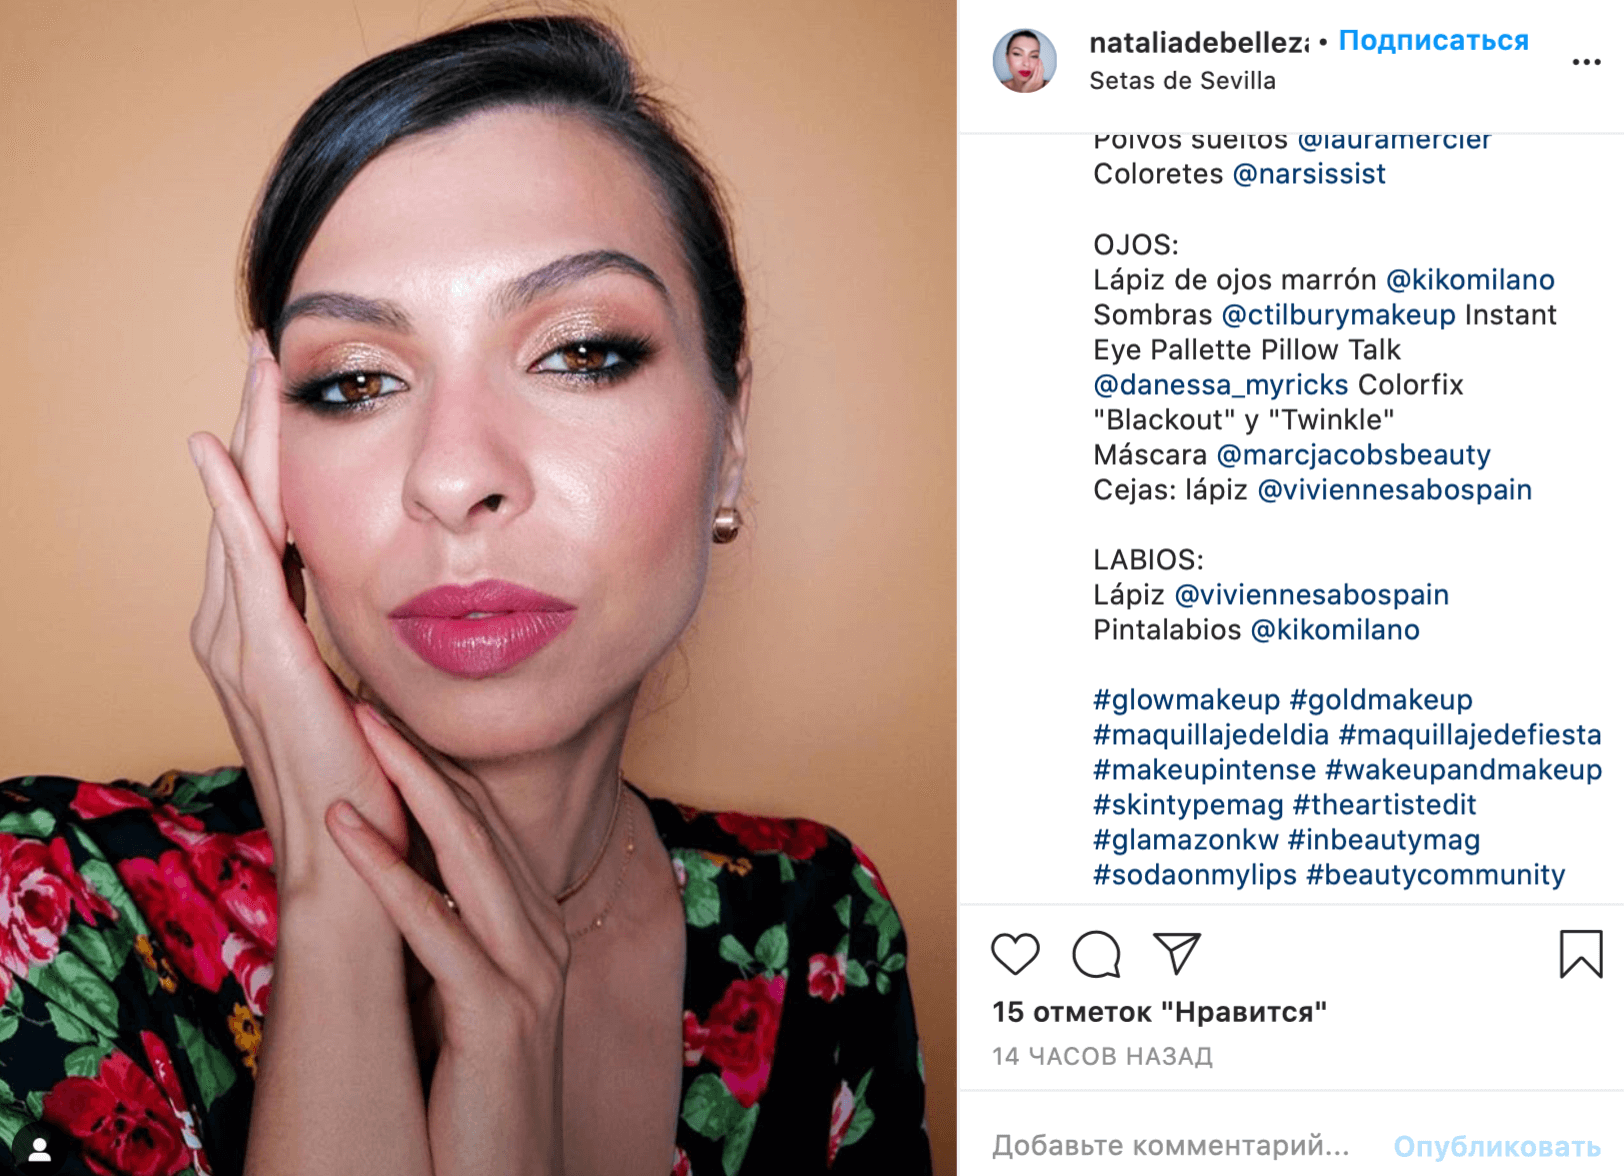 Бьютиблогеры из Испании активно делают макияжи с использованием косметики Vivienne Sabo и отмечают бренд в Instagram